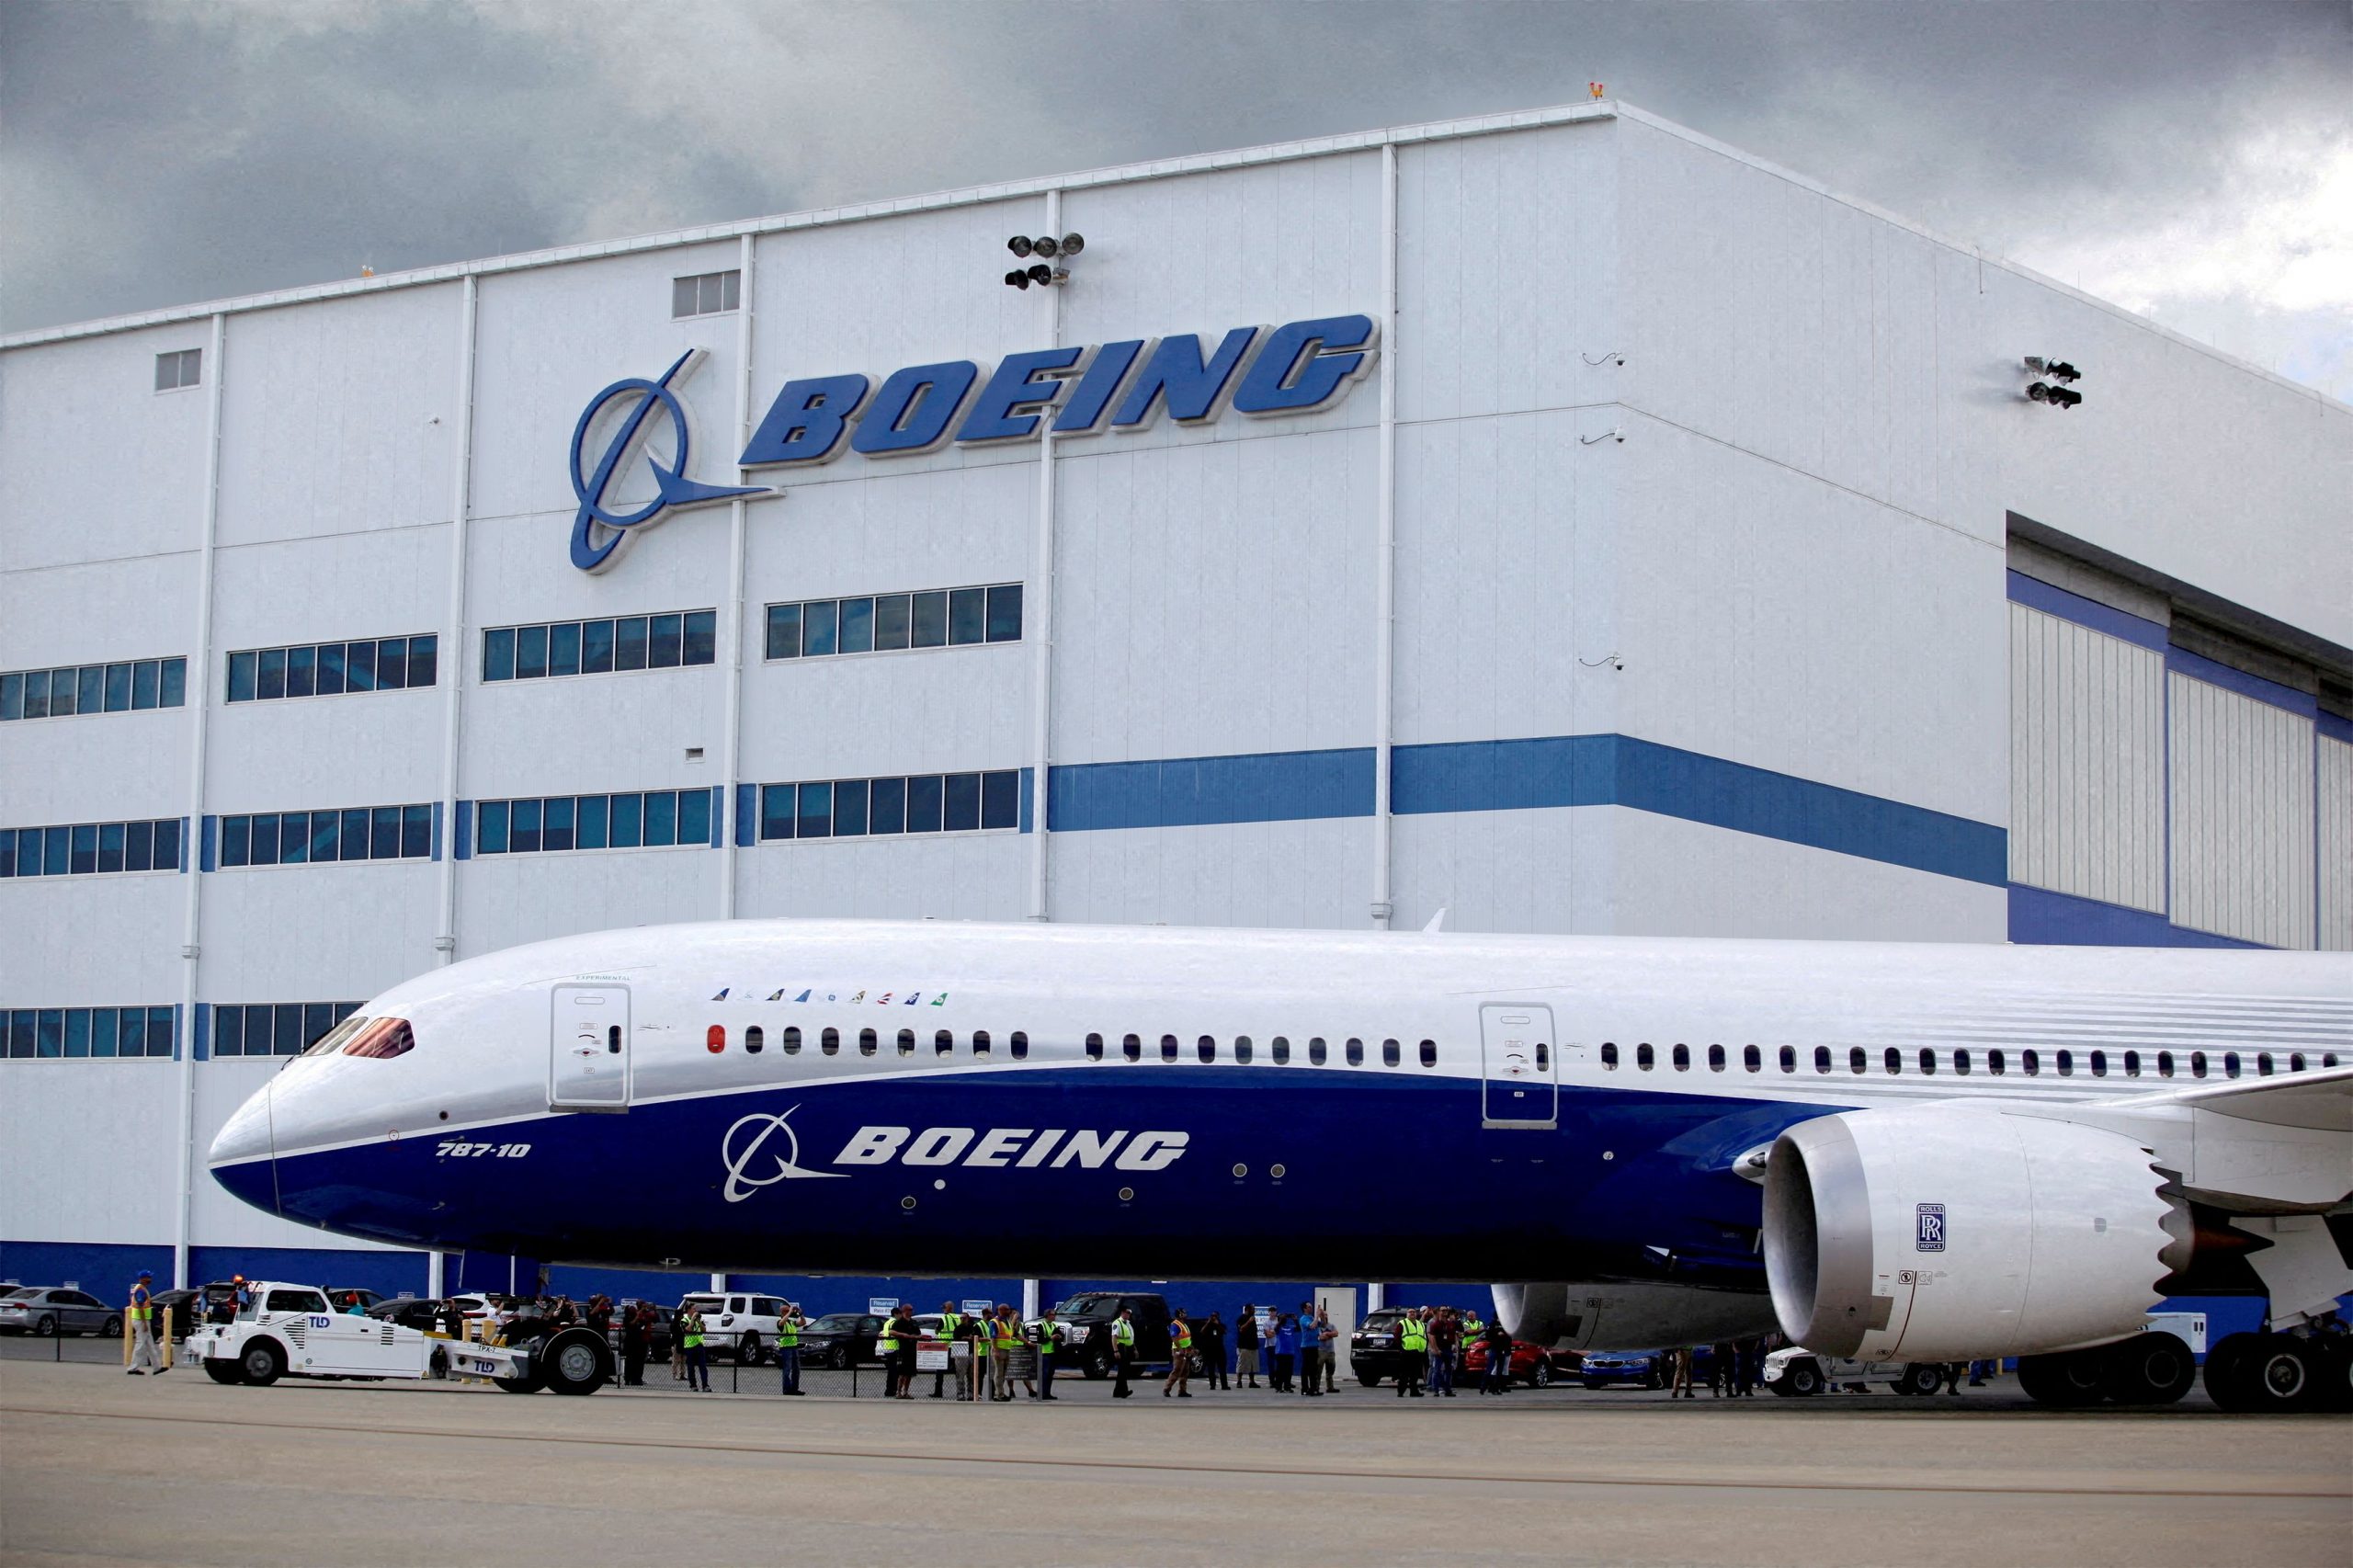 Boeing: Η ελαττωματική άτρακτος μείωσε τις παραδόσεις νέων αεροσκαφών τον Οκτώβριο